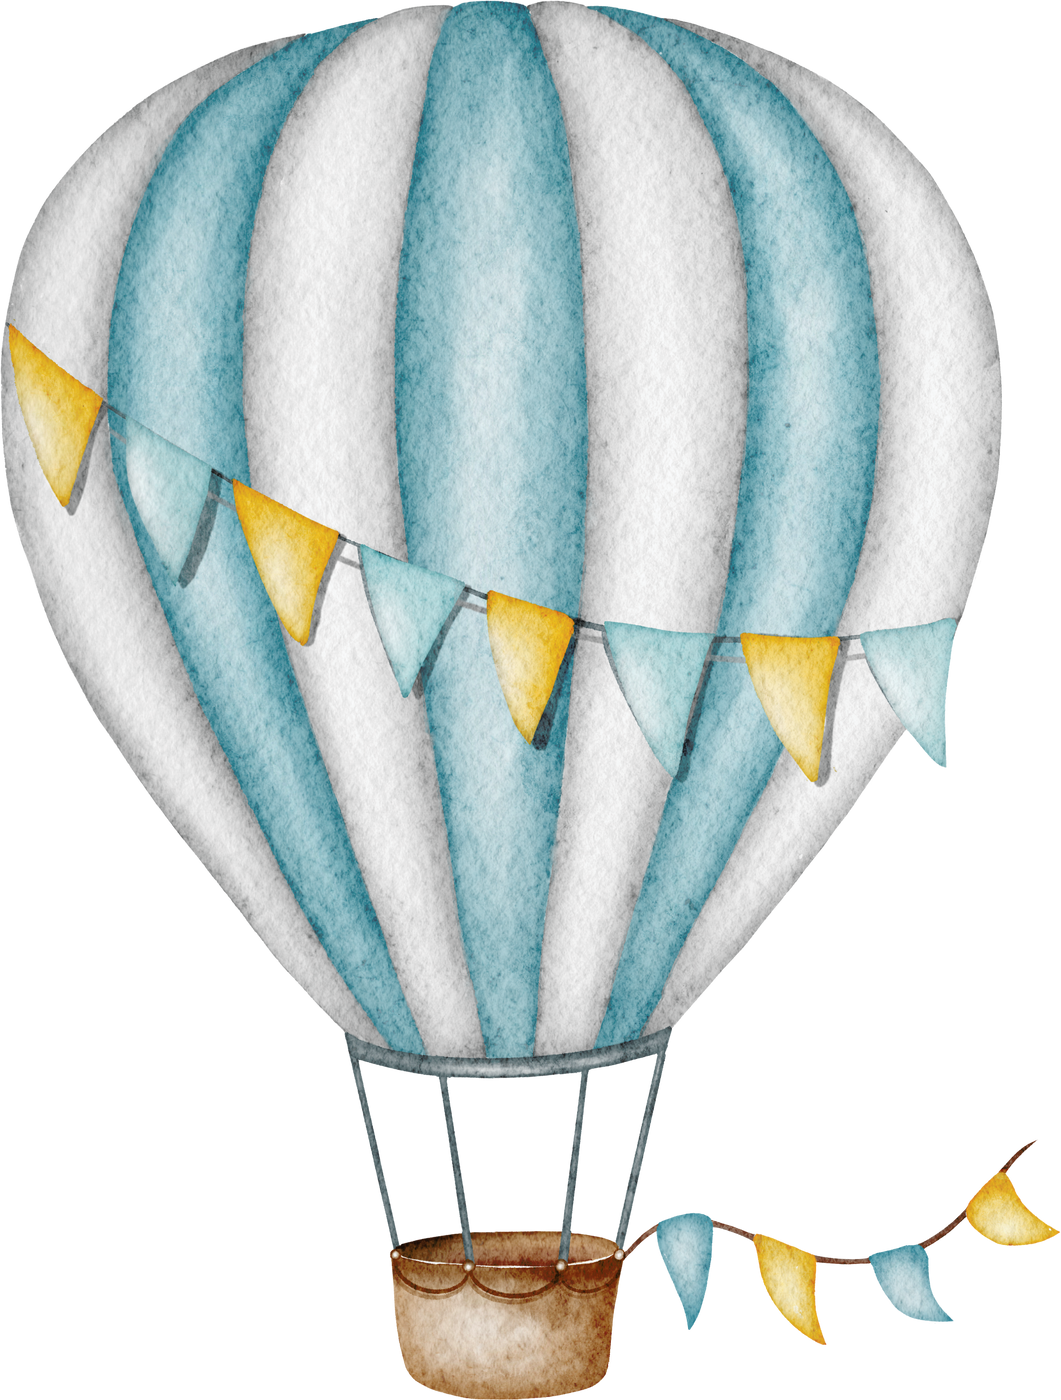 Watercolor hot air balloon illustration